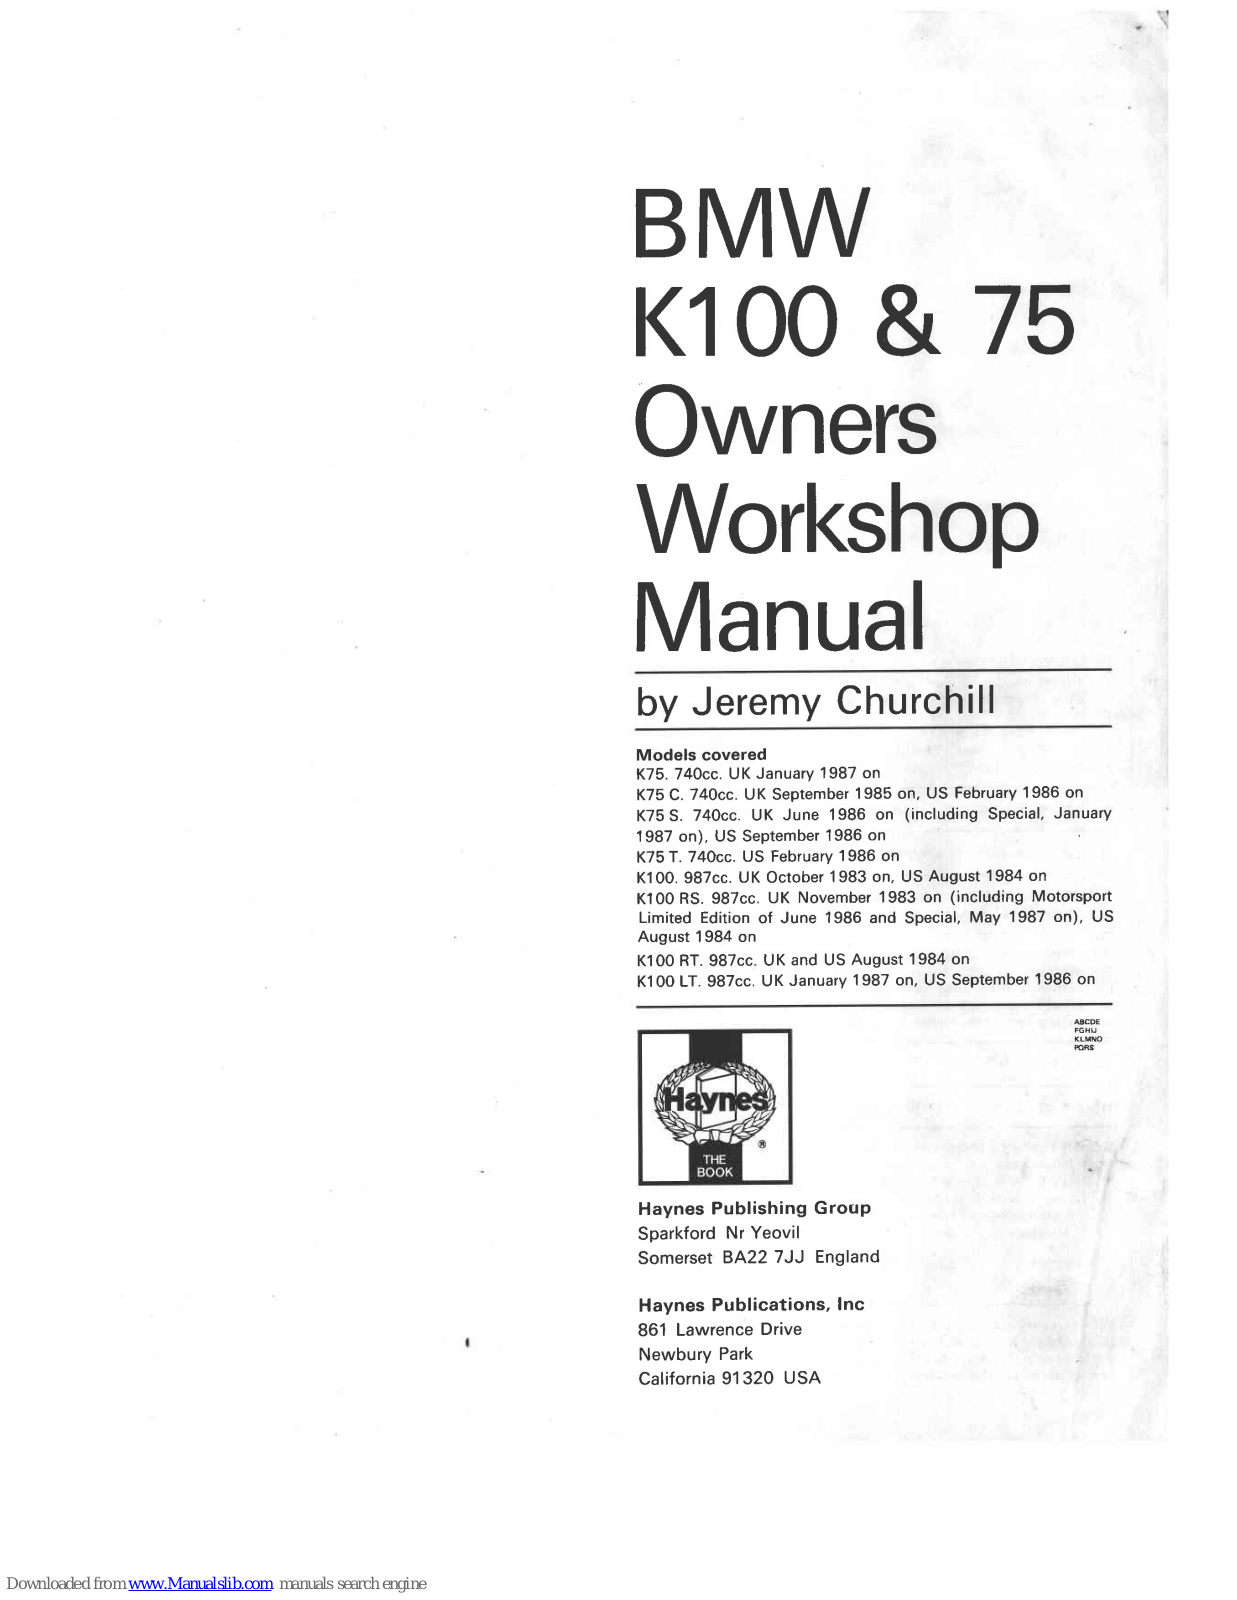 BMW 1987 K75, 1983 K100, 1983 K100 RS, 1984 K100 RT, 1987 K100 LT Owners Workshop Manual